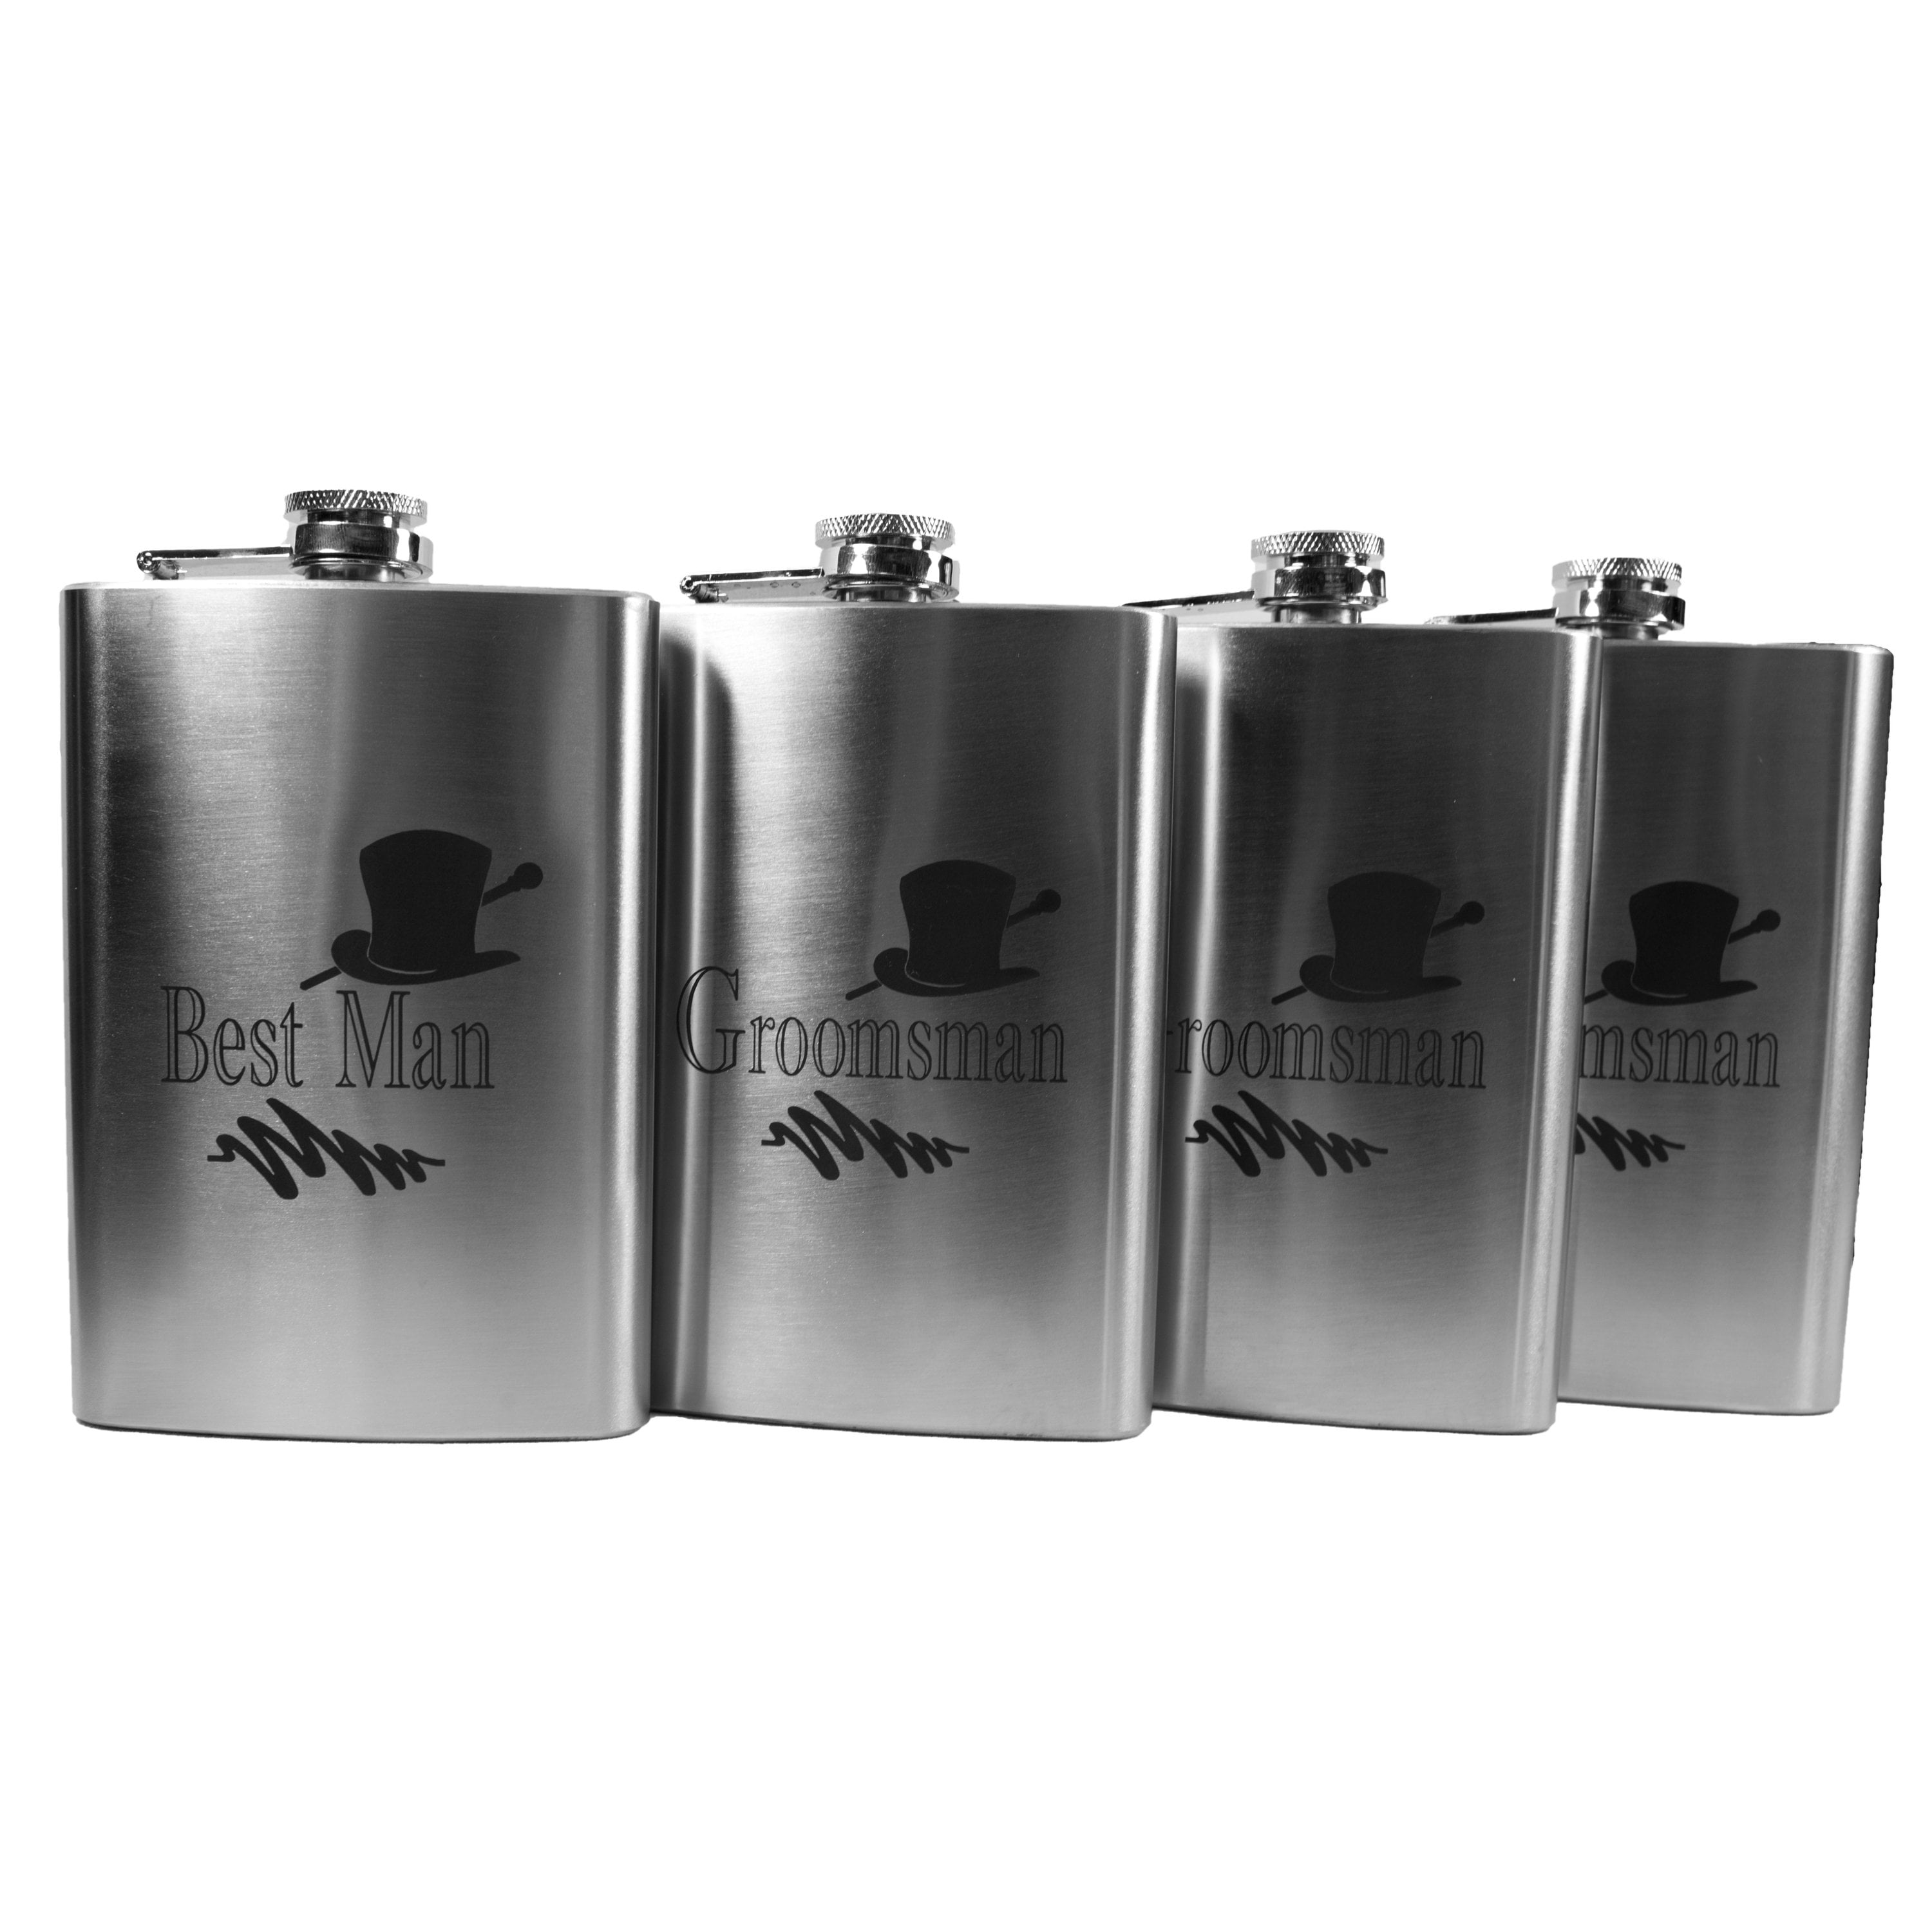 Top Shelf Flasks® 6 Pack of Laser Engraved 8oz Groomsman Flasks Personalized 